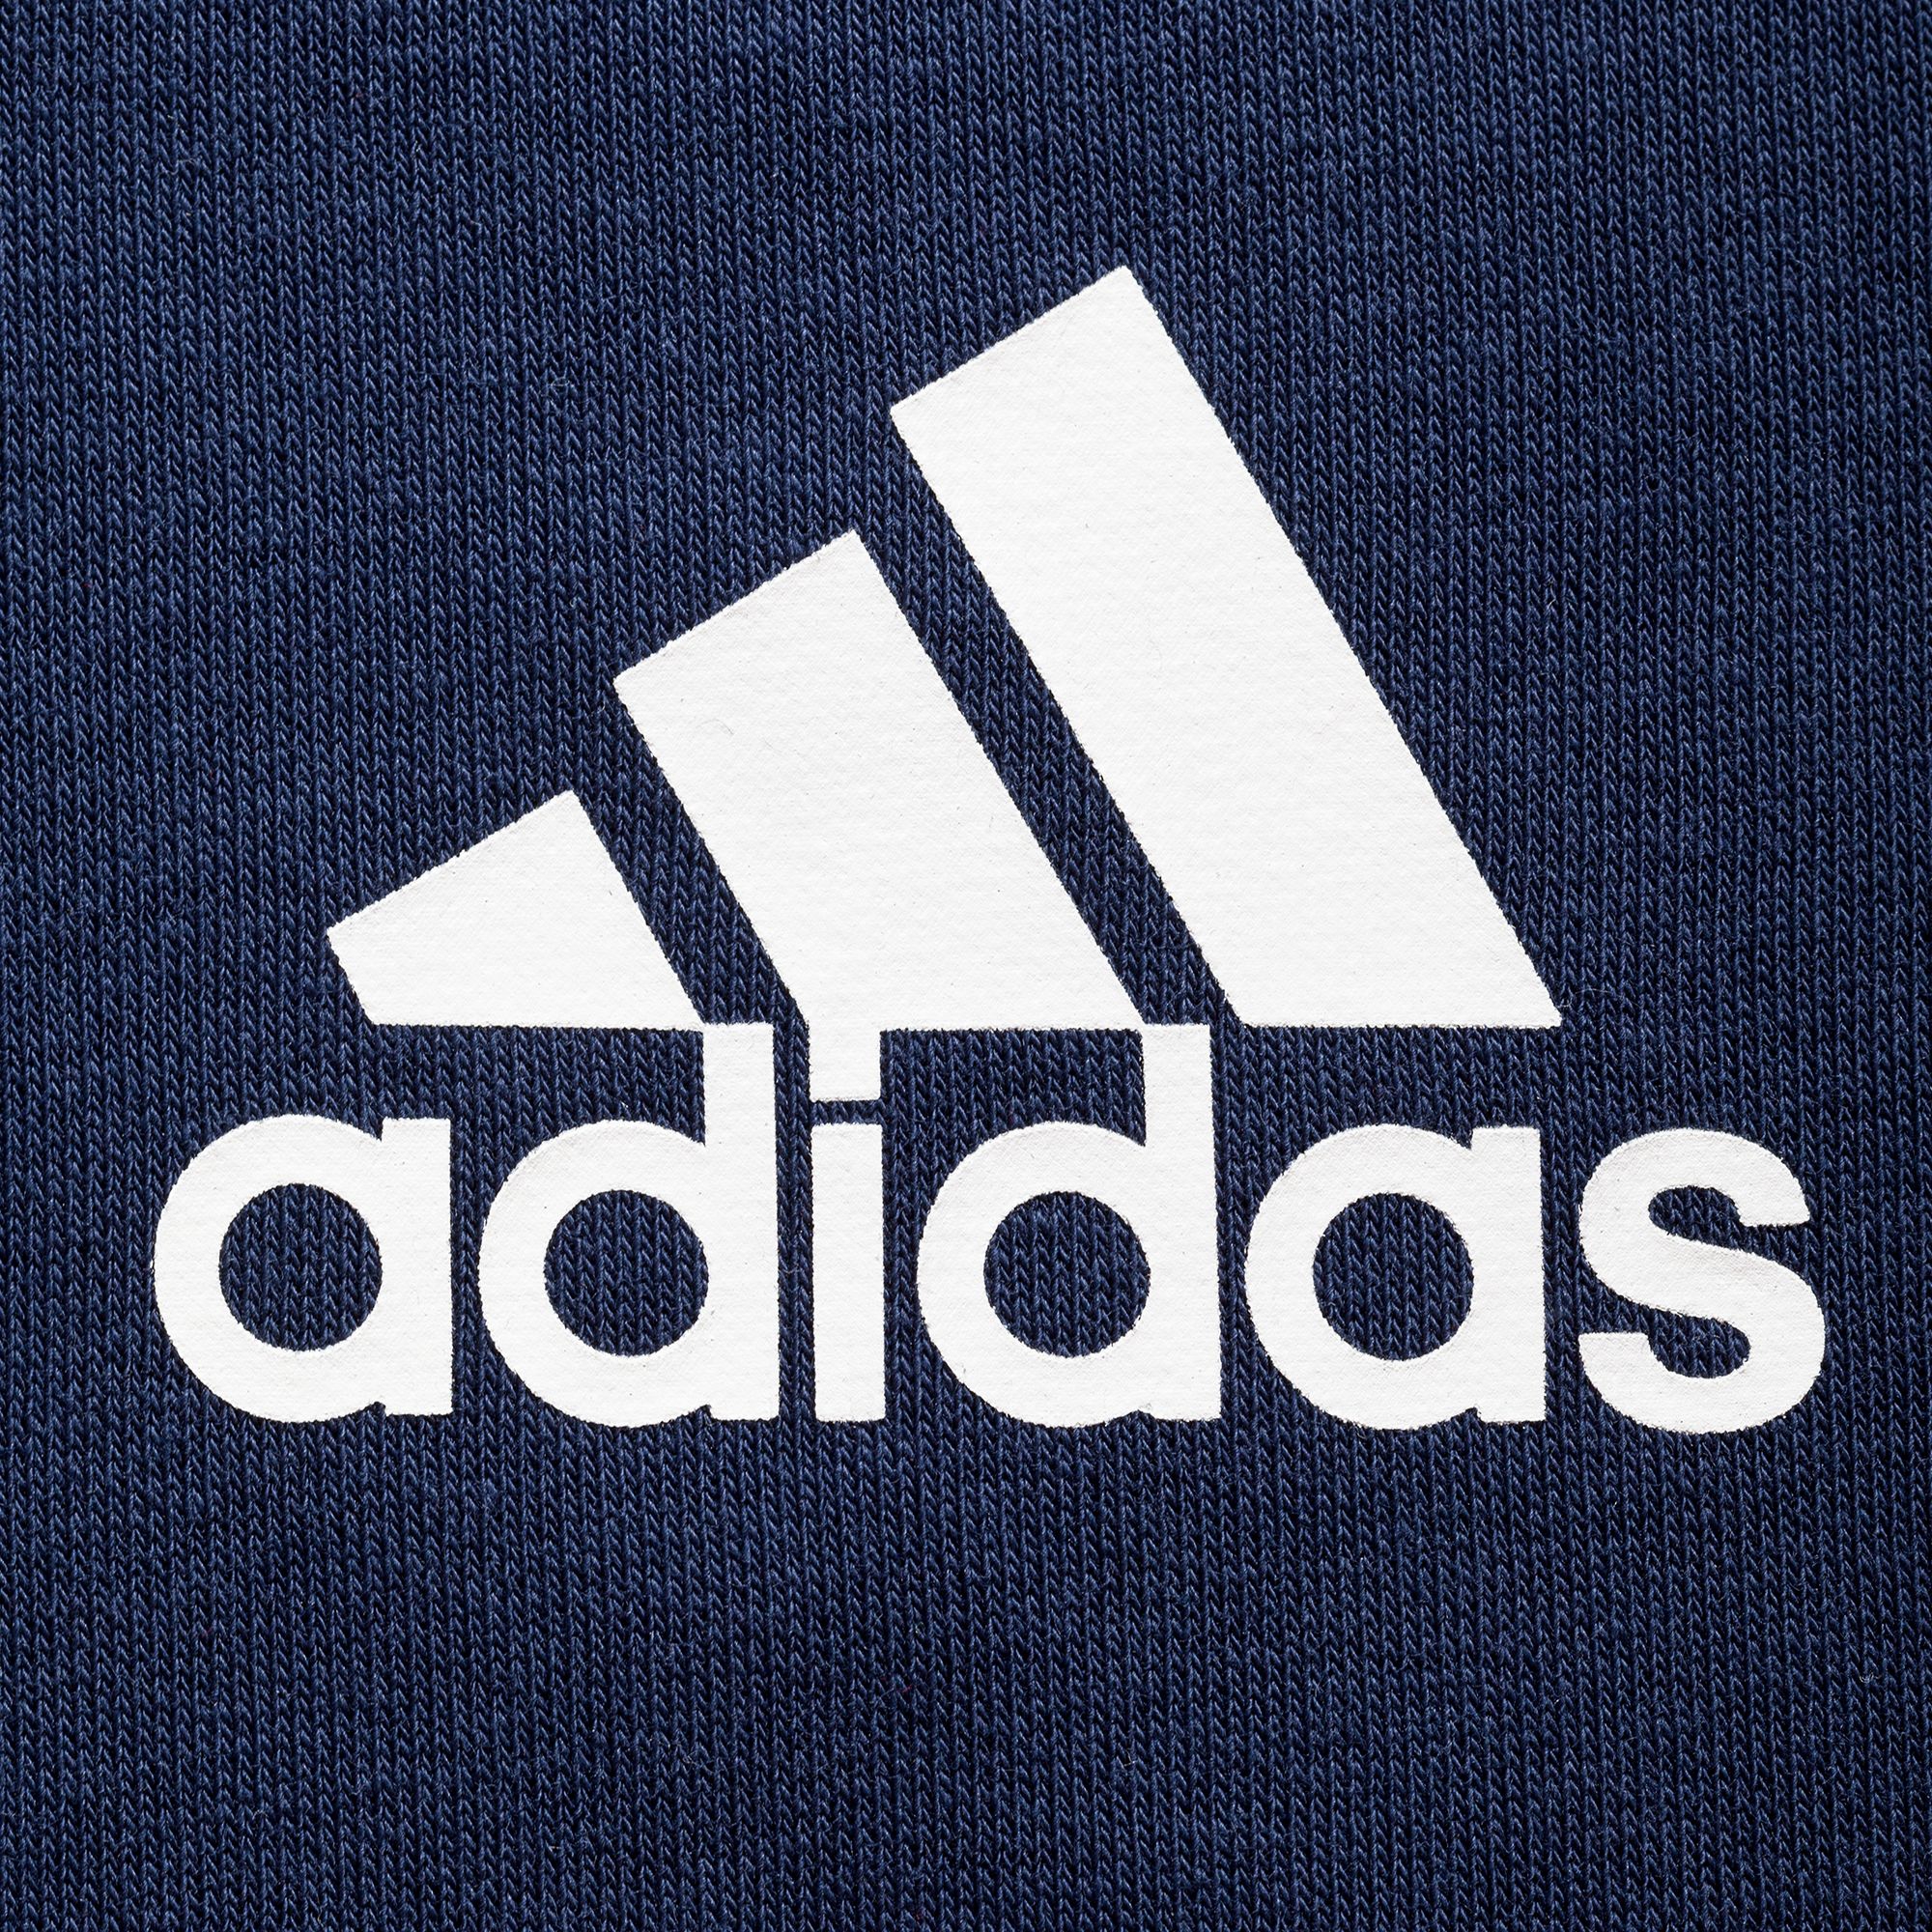 Адидас буквы. Adidas новый логотип. Adidas Performance логотип. Адидас лого вектор. Знак адидас на черном фоне.